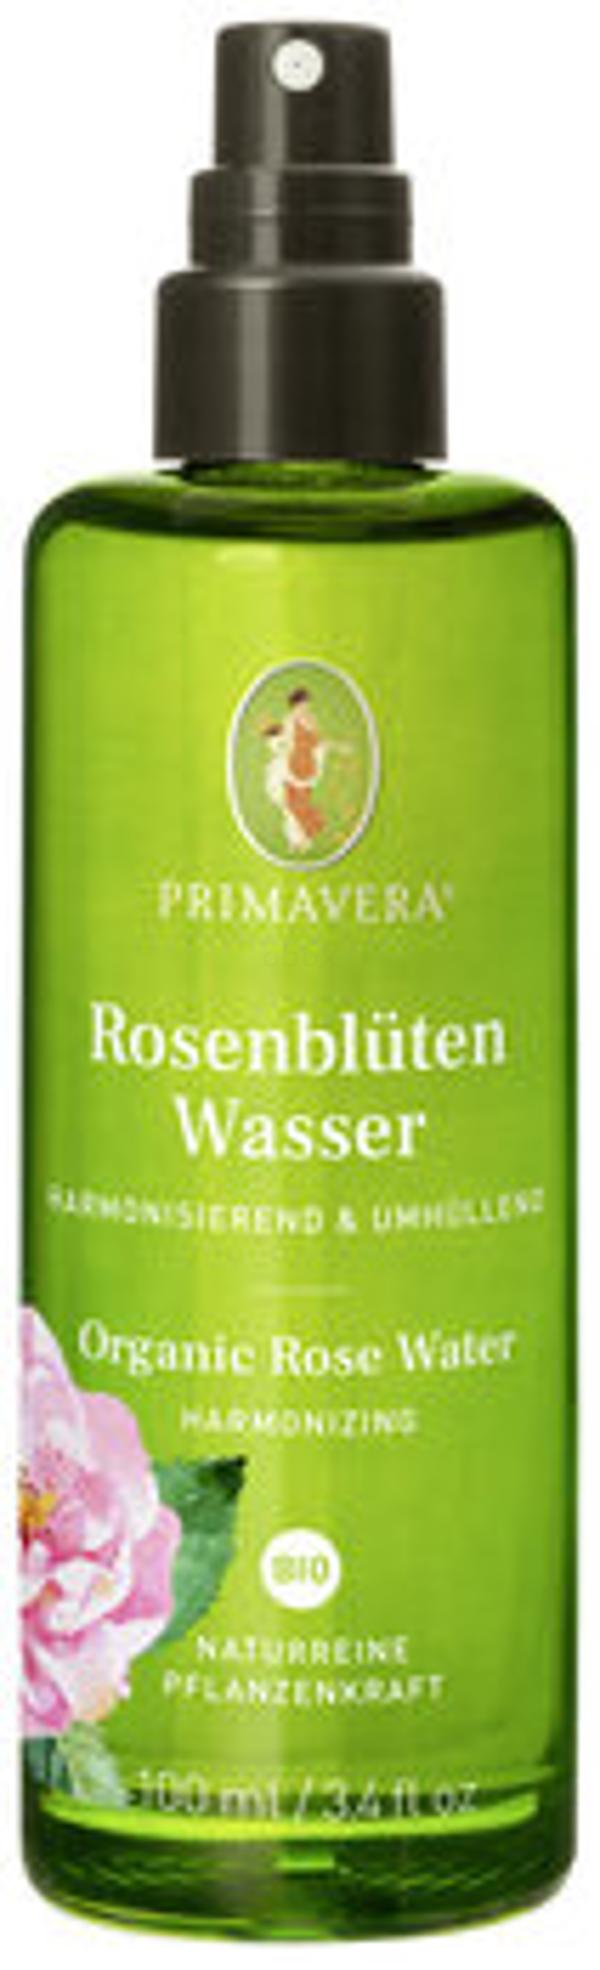 Produktfoto zu Rosenblütenwasser, 100 ml